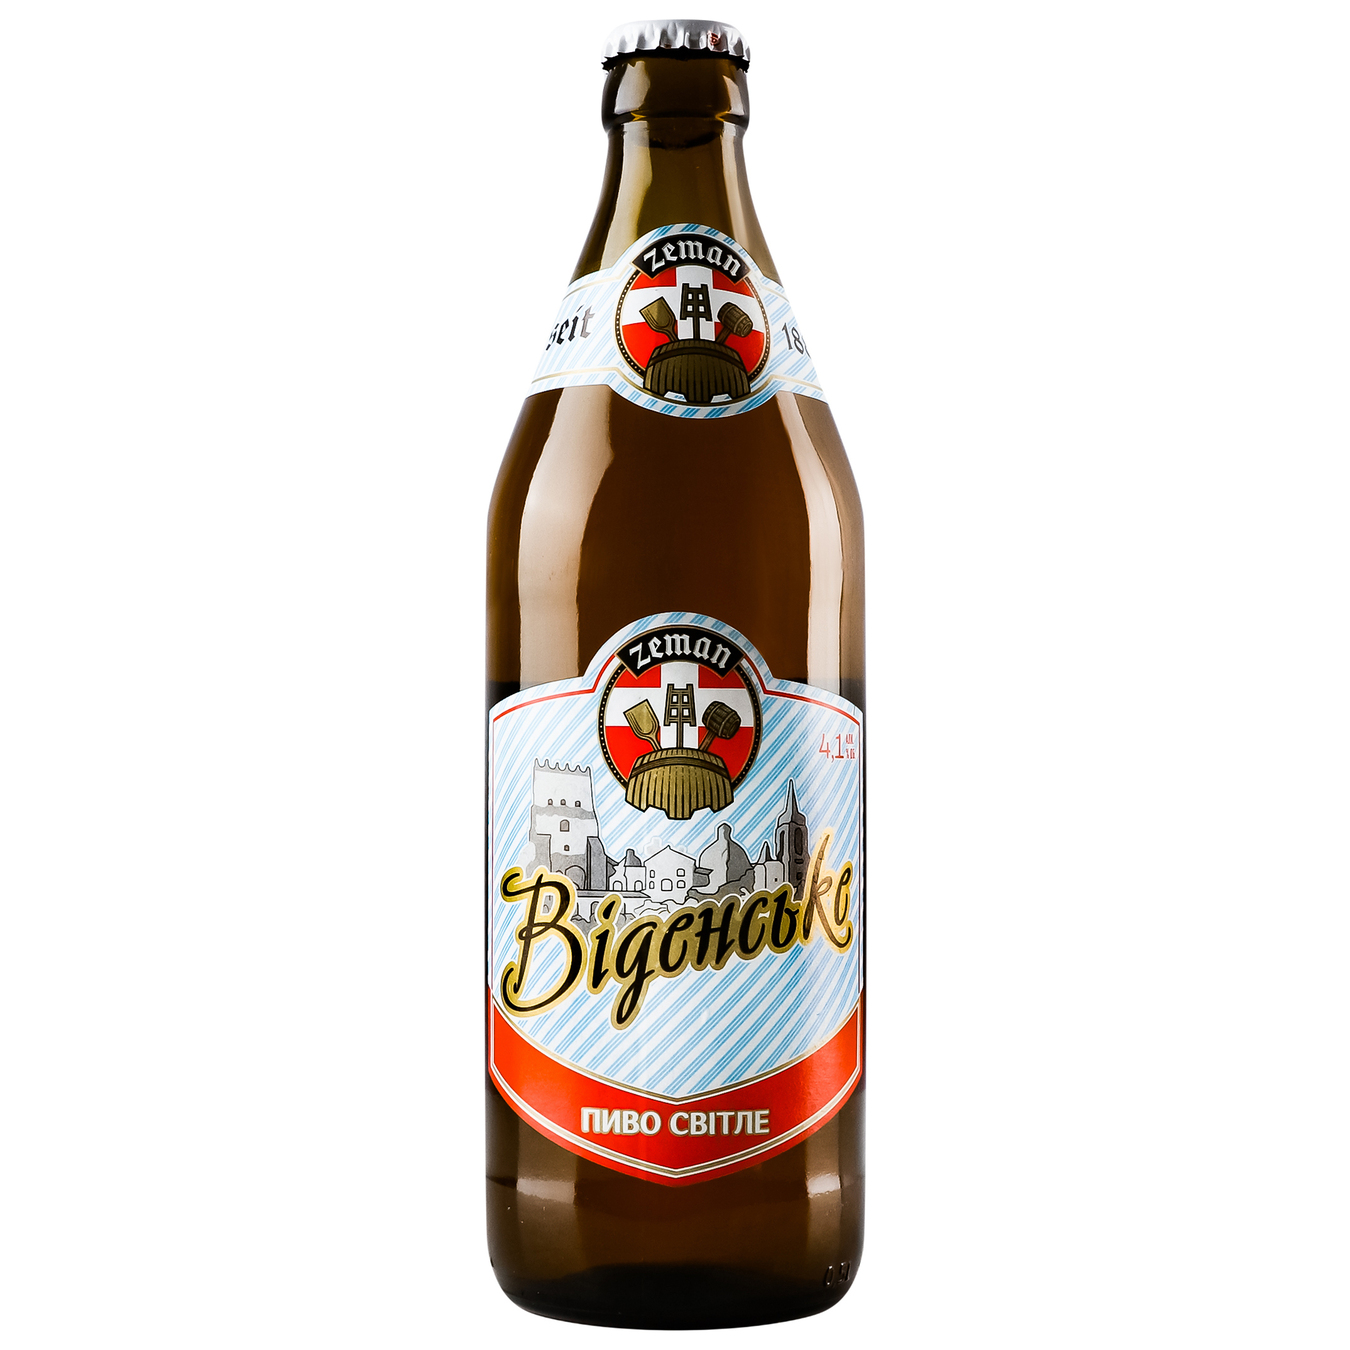 Light beer Zeman Venskoye 4.1% 0.5 l